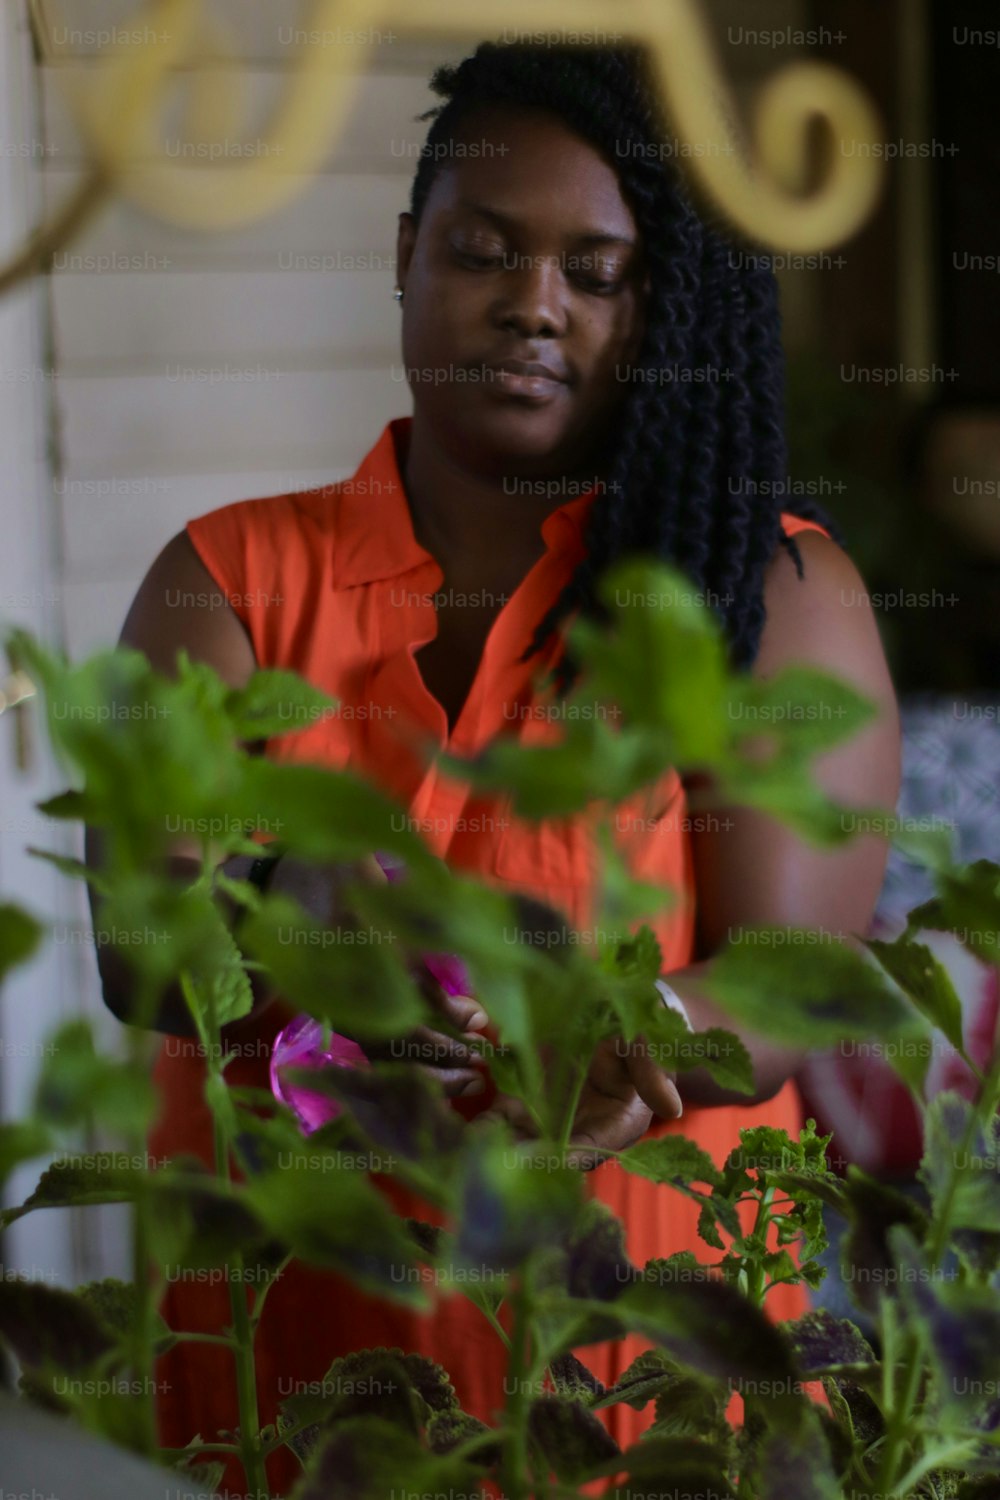 オレンジ色のシャツを着た女性が植物を見ている